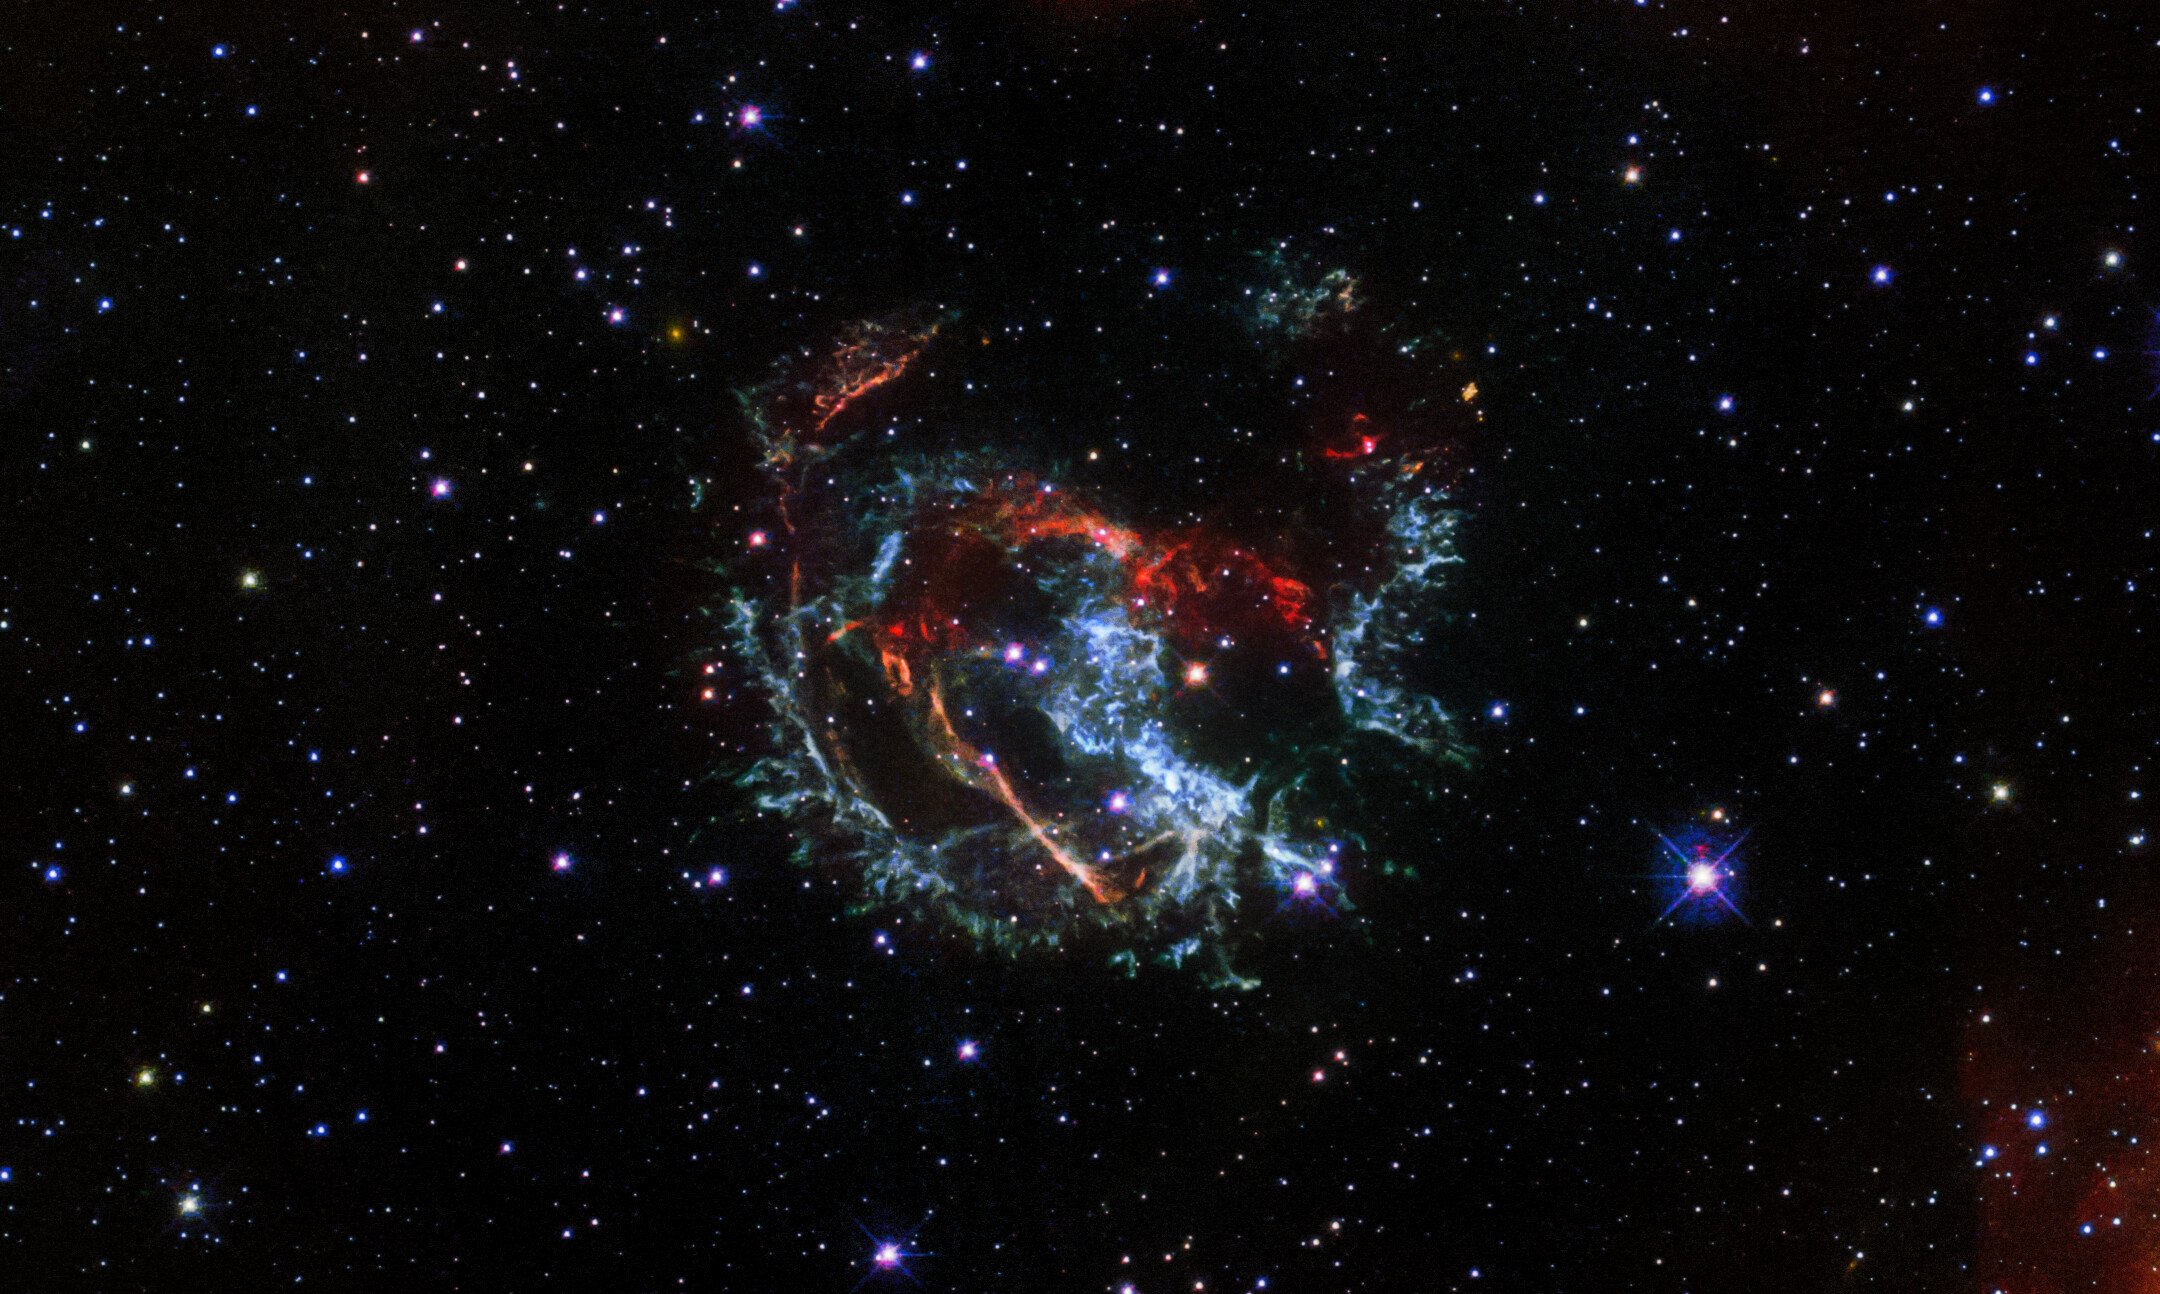 Supernova 1E 0102.2-7219 observada pelo Telescópio Hubble, localizada na pequena Nuvem de Magalhães (galáxia anã satélite da Via Láctea)